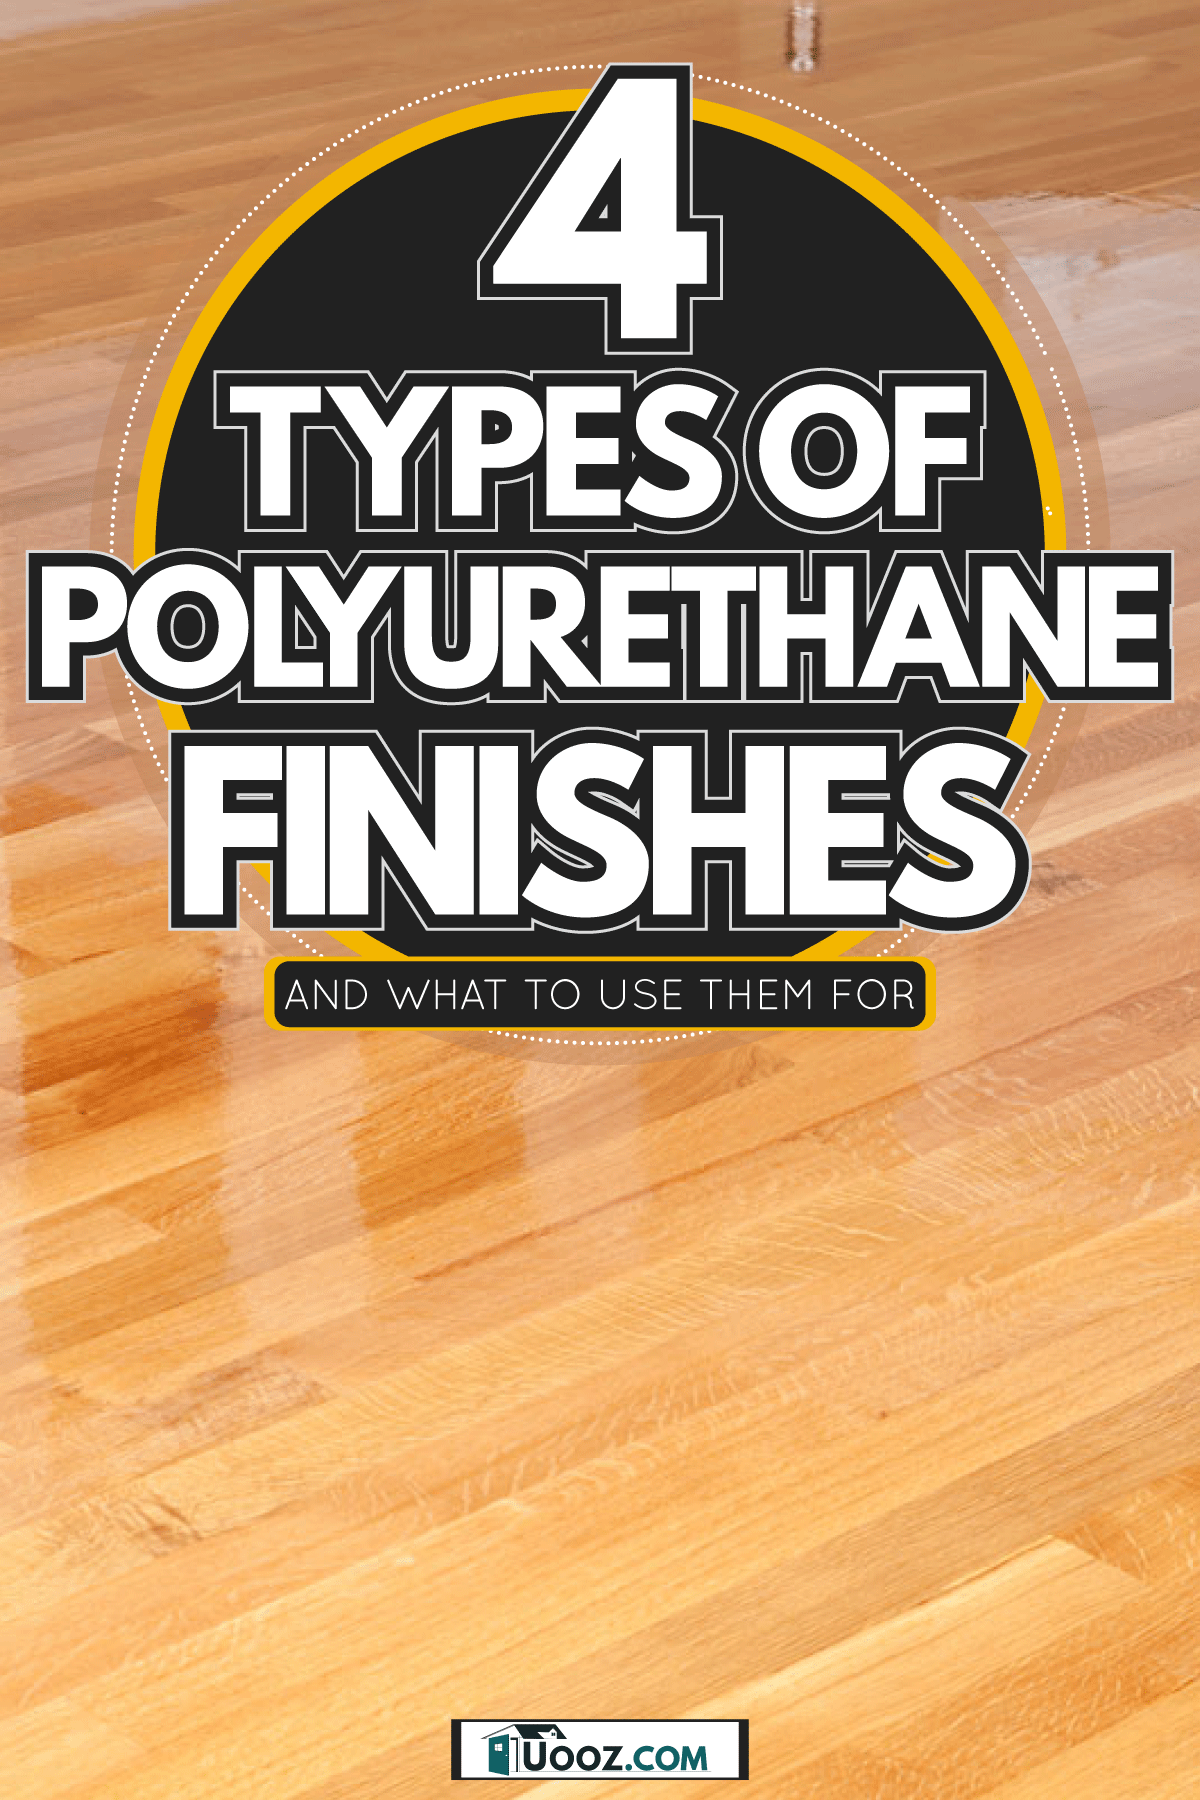 New Wet Polyurethane Coated Oak Hardwood Floor, 4 Types of Polyurethane Finishes [And What to Use Them For]